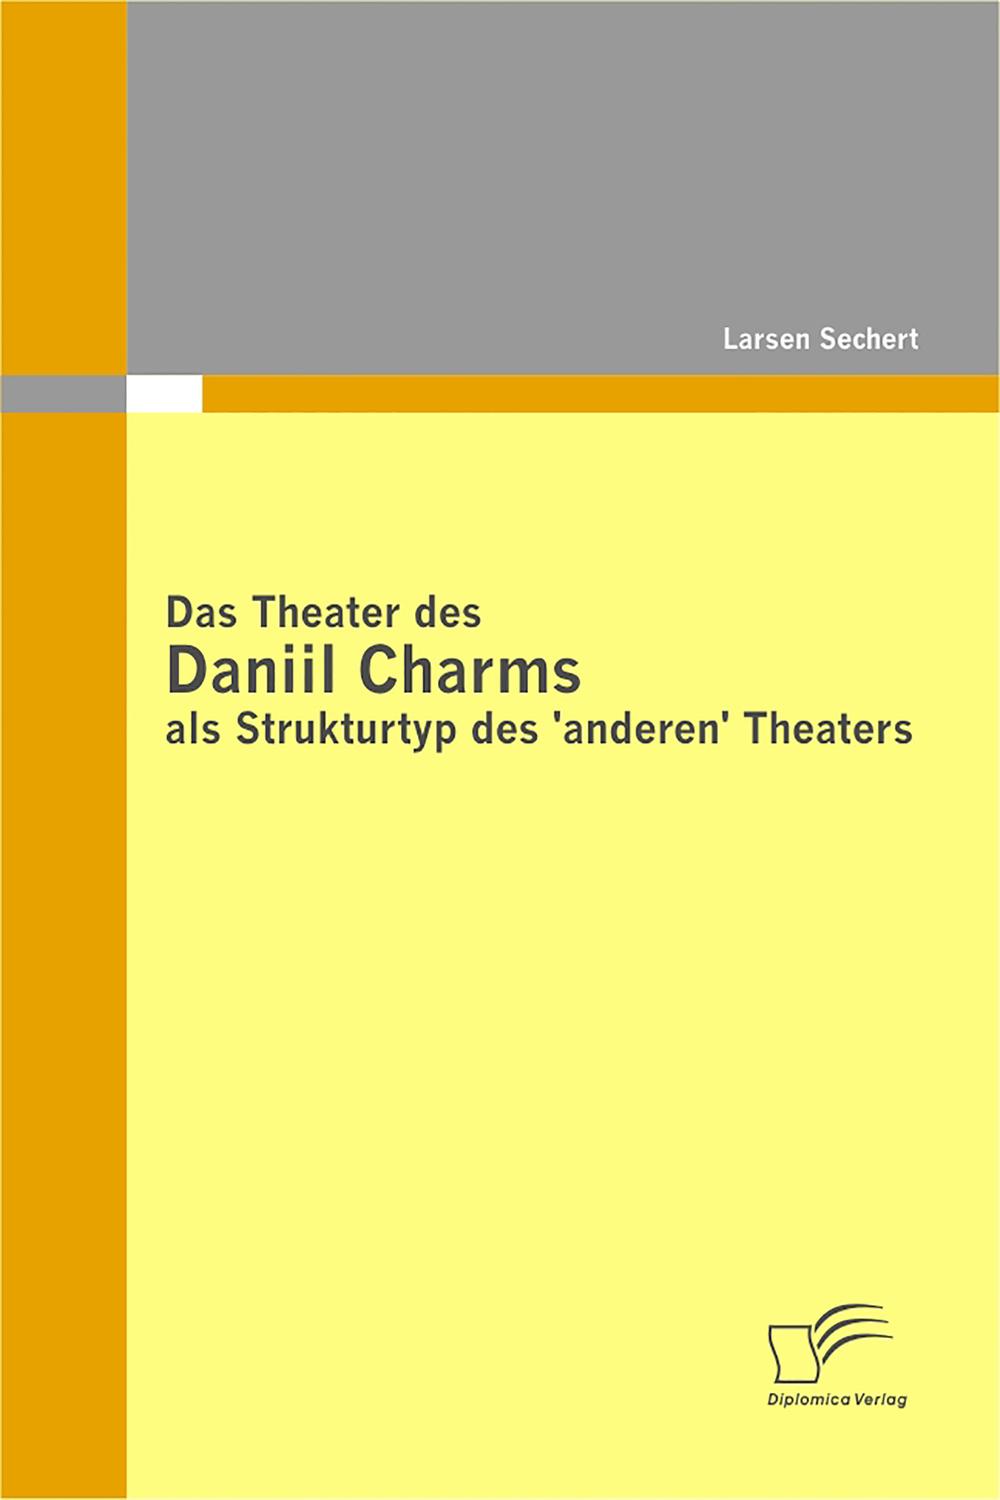 Das Theater des Daniil Charms als Strukturtyp des 'anderen' Theaters - Larsen Sechert